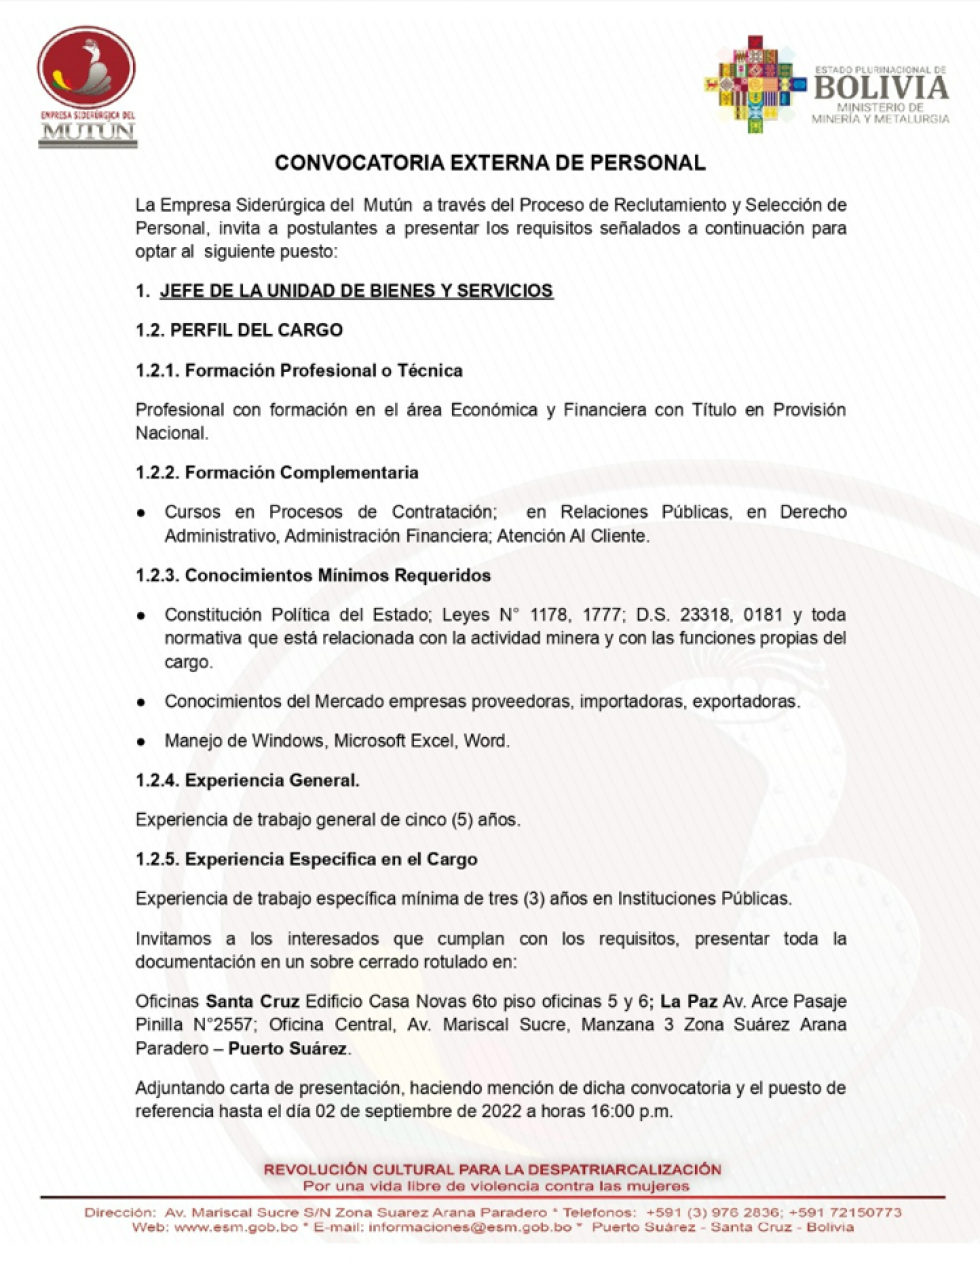 CONVOCATORIA EXTERNA DE PERSONAL   - Empresa Siderúrgica del Mutún